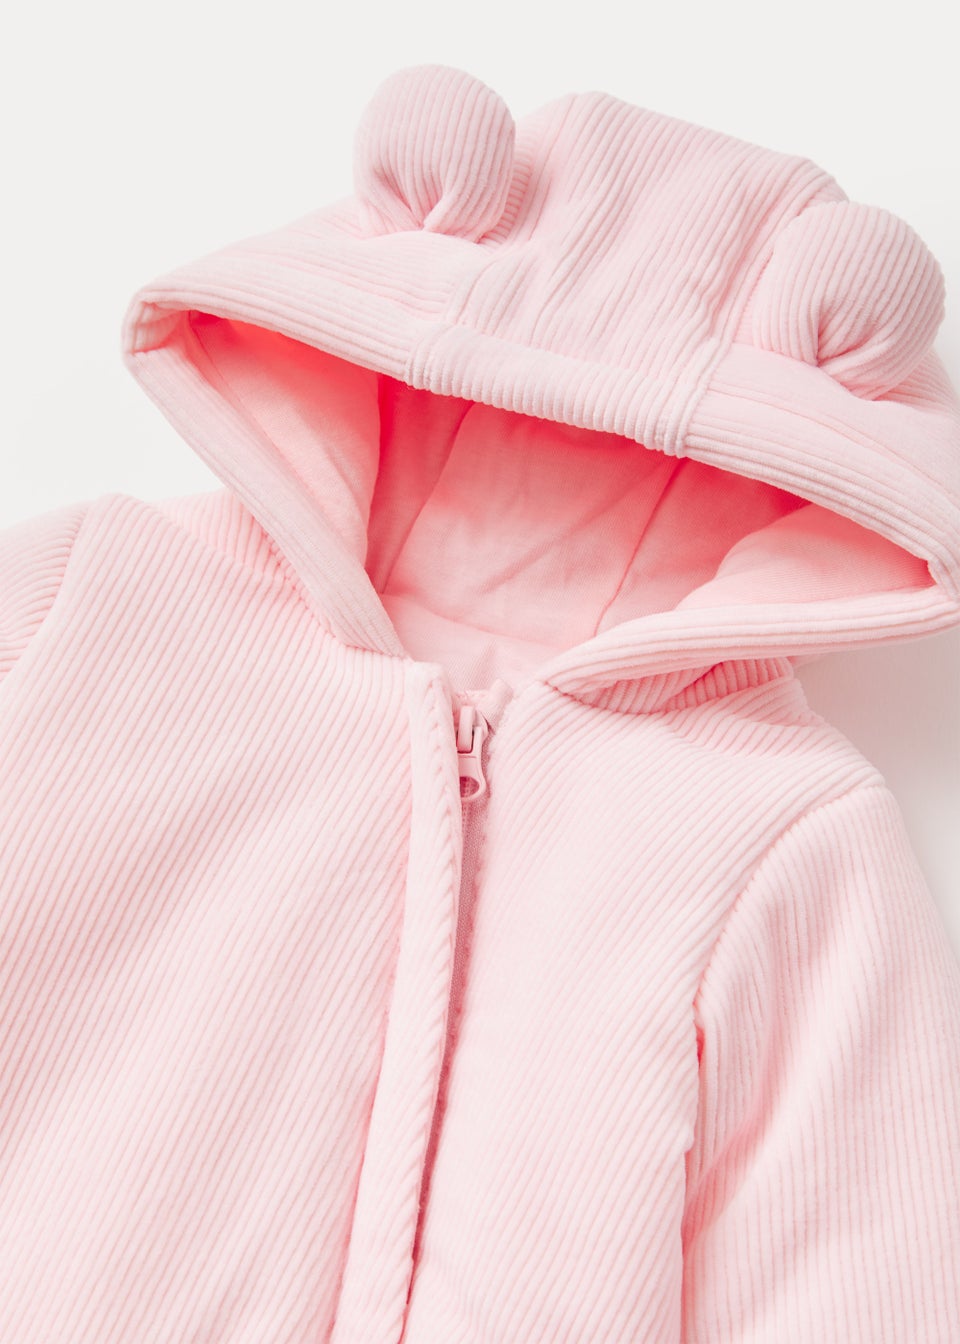 Baby Pink Velour Snowsuit (Newborn-18mths)